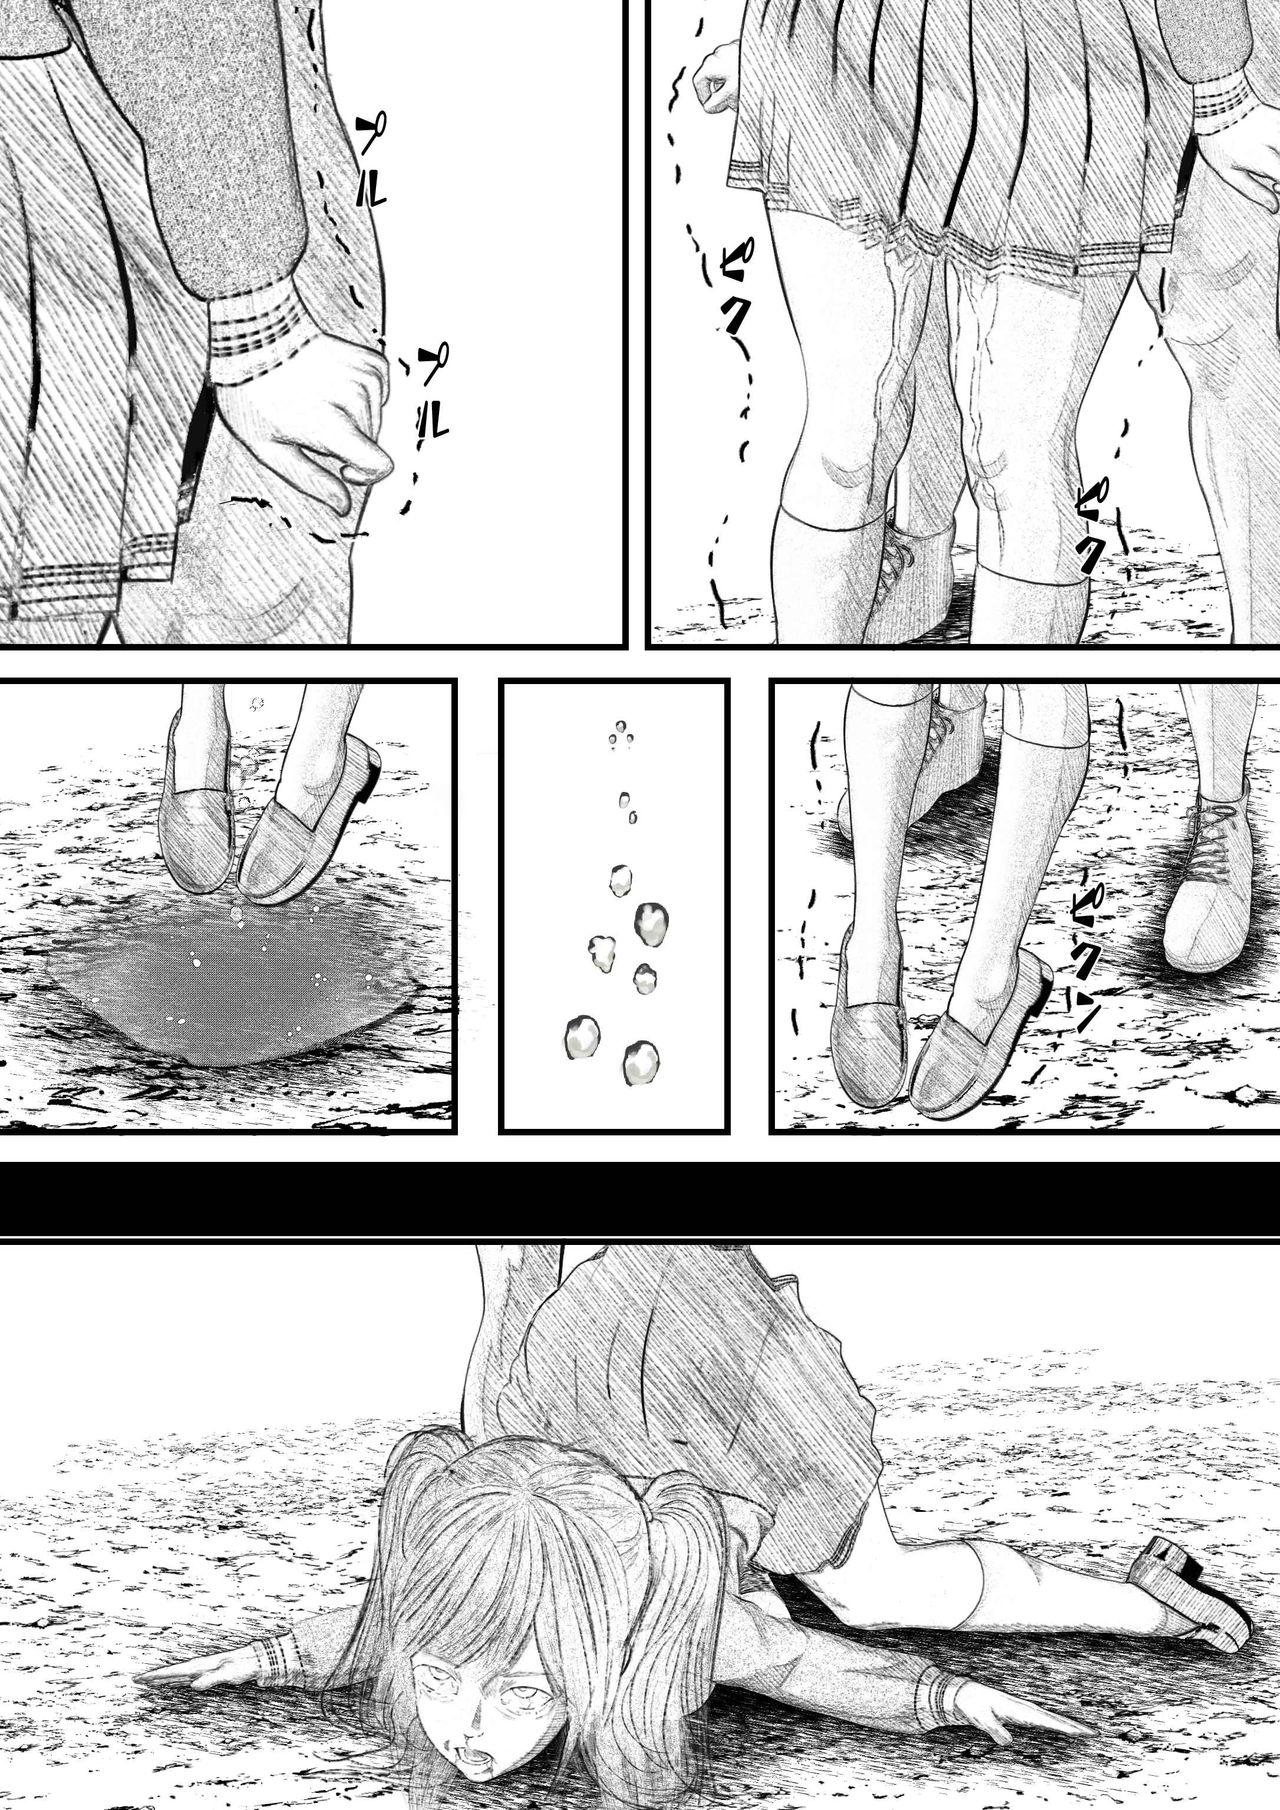 Ano Merii! Kubishimemasu! 2020 Kubishime Manga Seisakuchuu 4 - Original Wife - Page 3